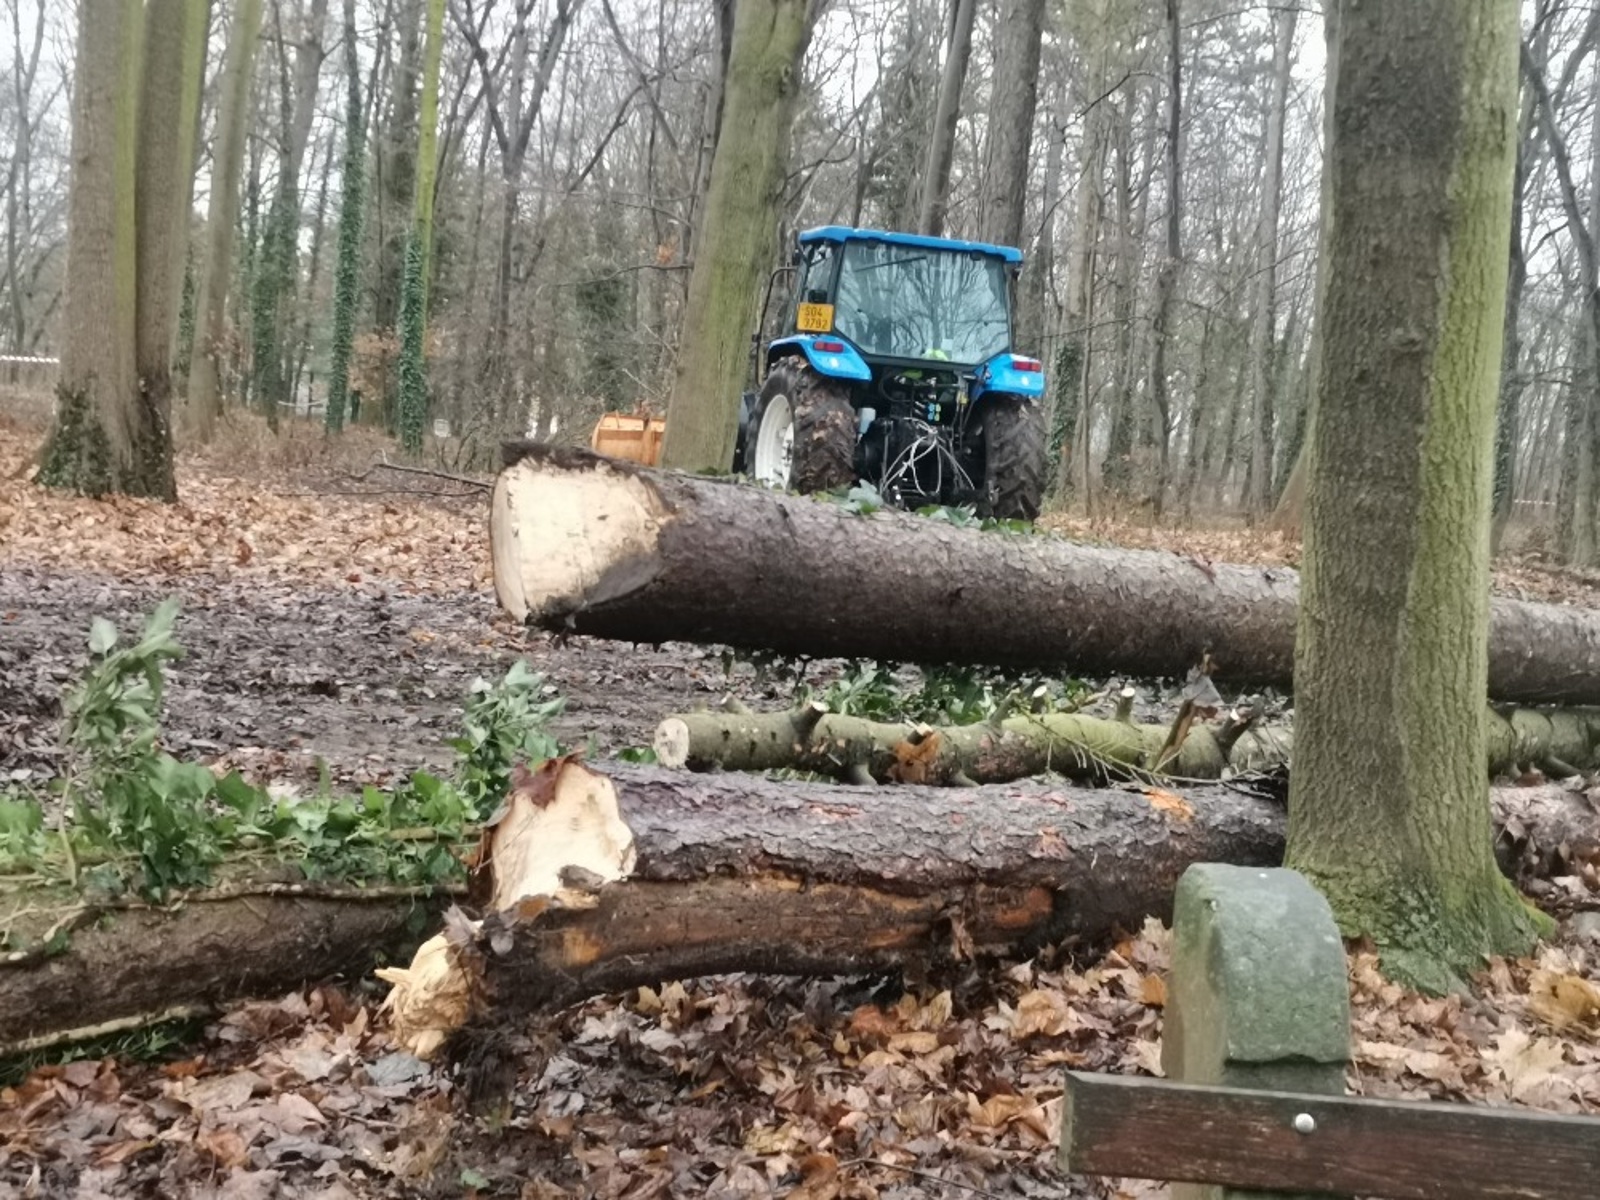 PODÍVEJTE SE: V lesoparku Háje pokračuje kácení, padne tam tři sta stromů -  Kladenský deník